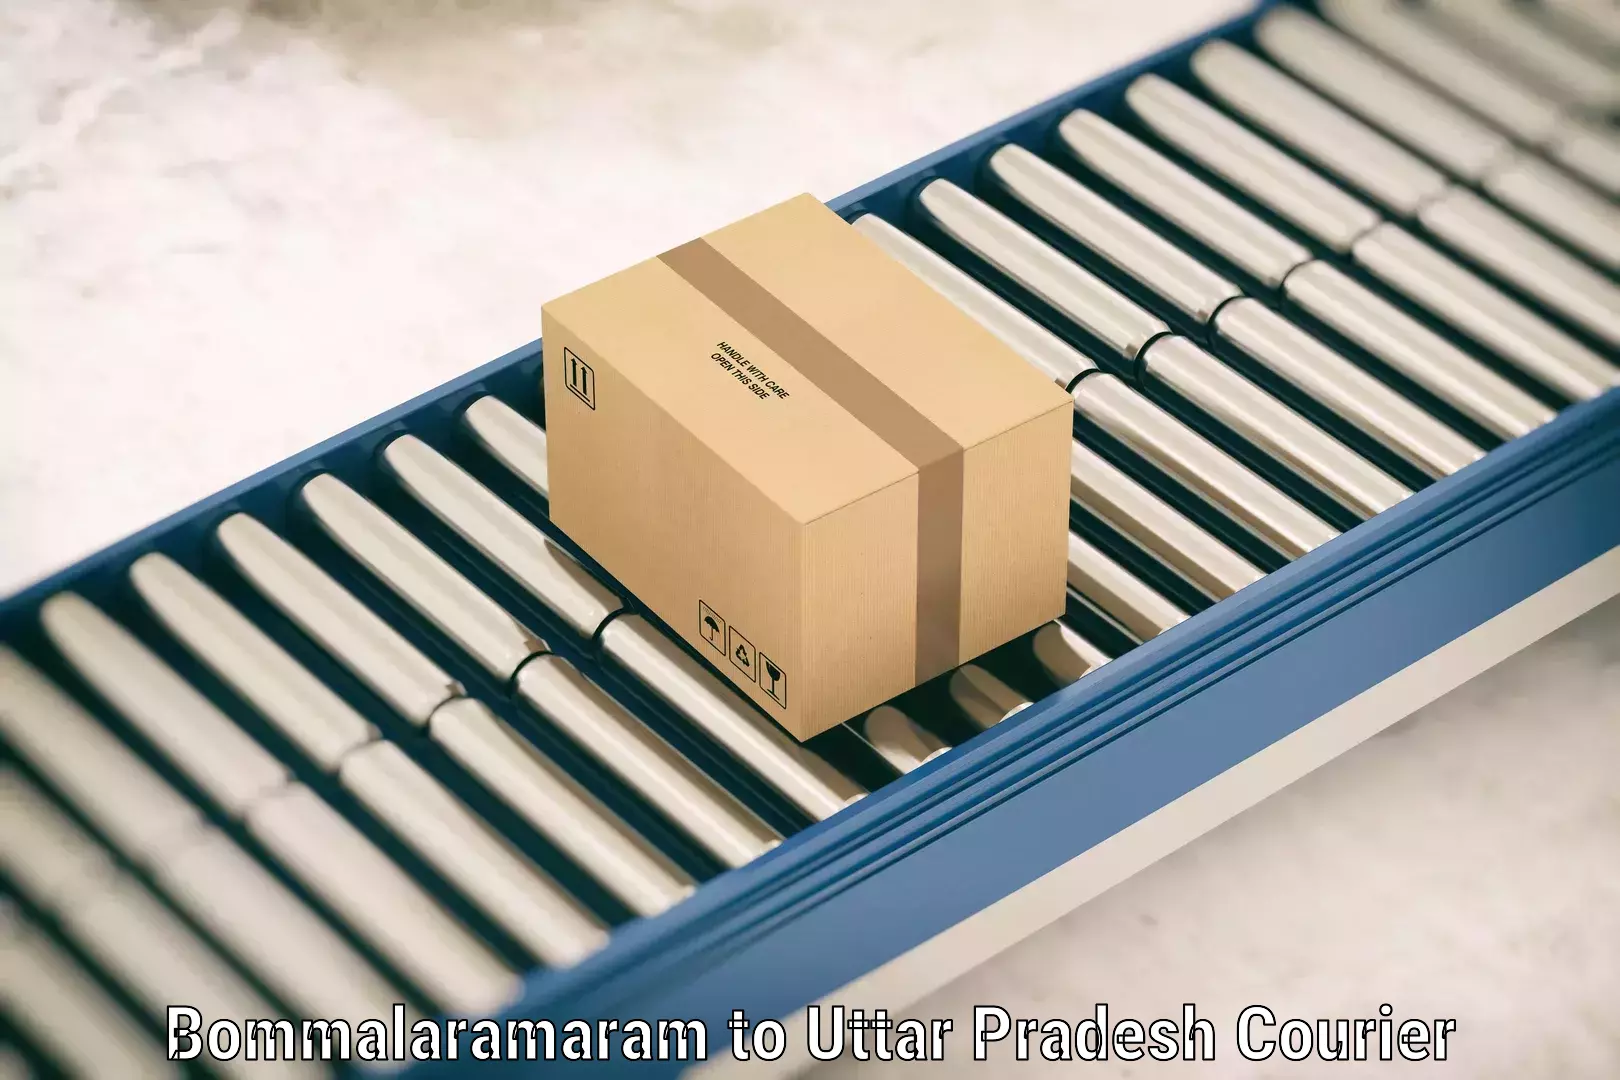 Baggage courier insights Bommalaramaram to Kauriram